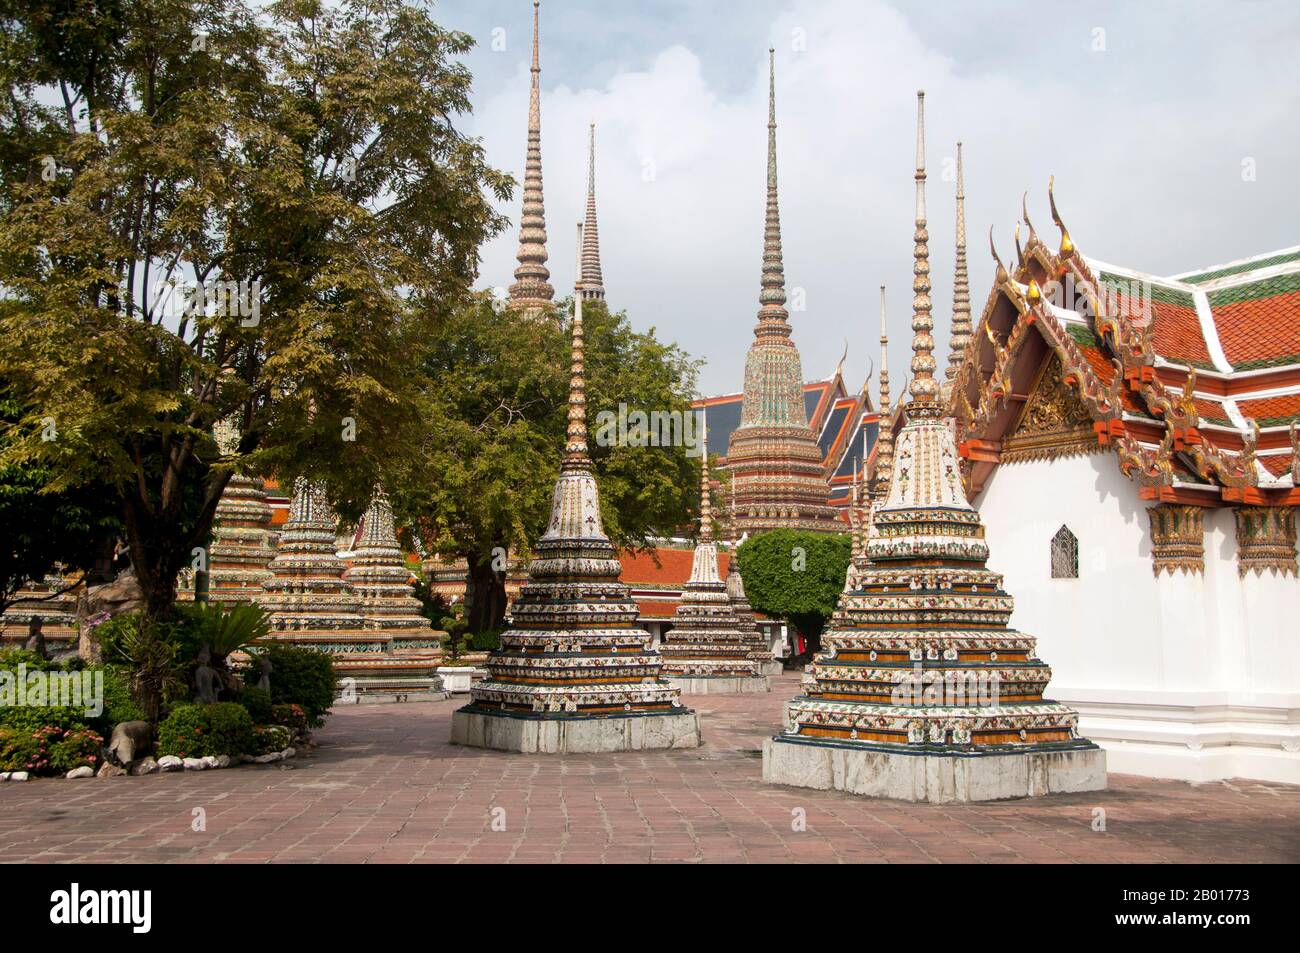 Thaïlande: Montée de Chedis à Wat Pho, Bangkok.Construit au 16th siècle, Wat Pho est le plus ancien temple de Bangkok.Le roi Rama I de la dynastie Chakri (1736—1809) reconstruit le temple en 1780s.Officiellement appelé Wat Phra Chetuphon, c'est l'un des temples bouddhistes les plus connus de Bangkok et est aujourd'hui une attraction touristique majeure, situé directement au sud du Grand Palais.Wat Pho est célèbre pour son Bouddha couché et renommé comme la maison du massage thaïlandais traditionnel. Banque D'Images